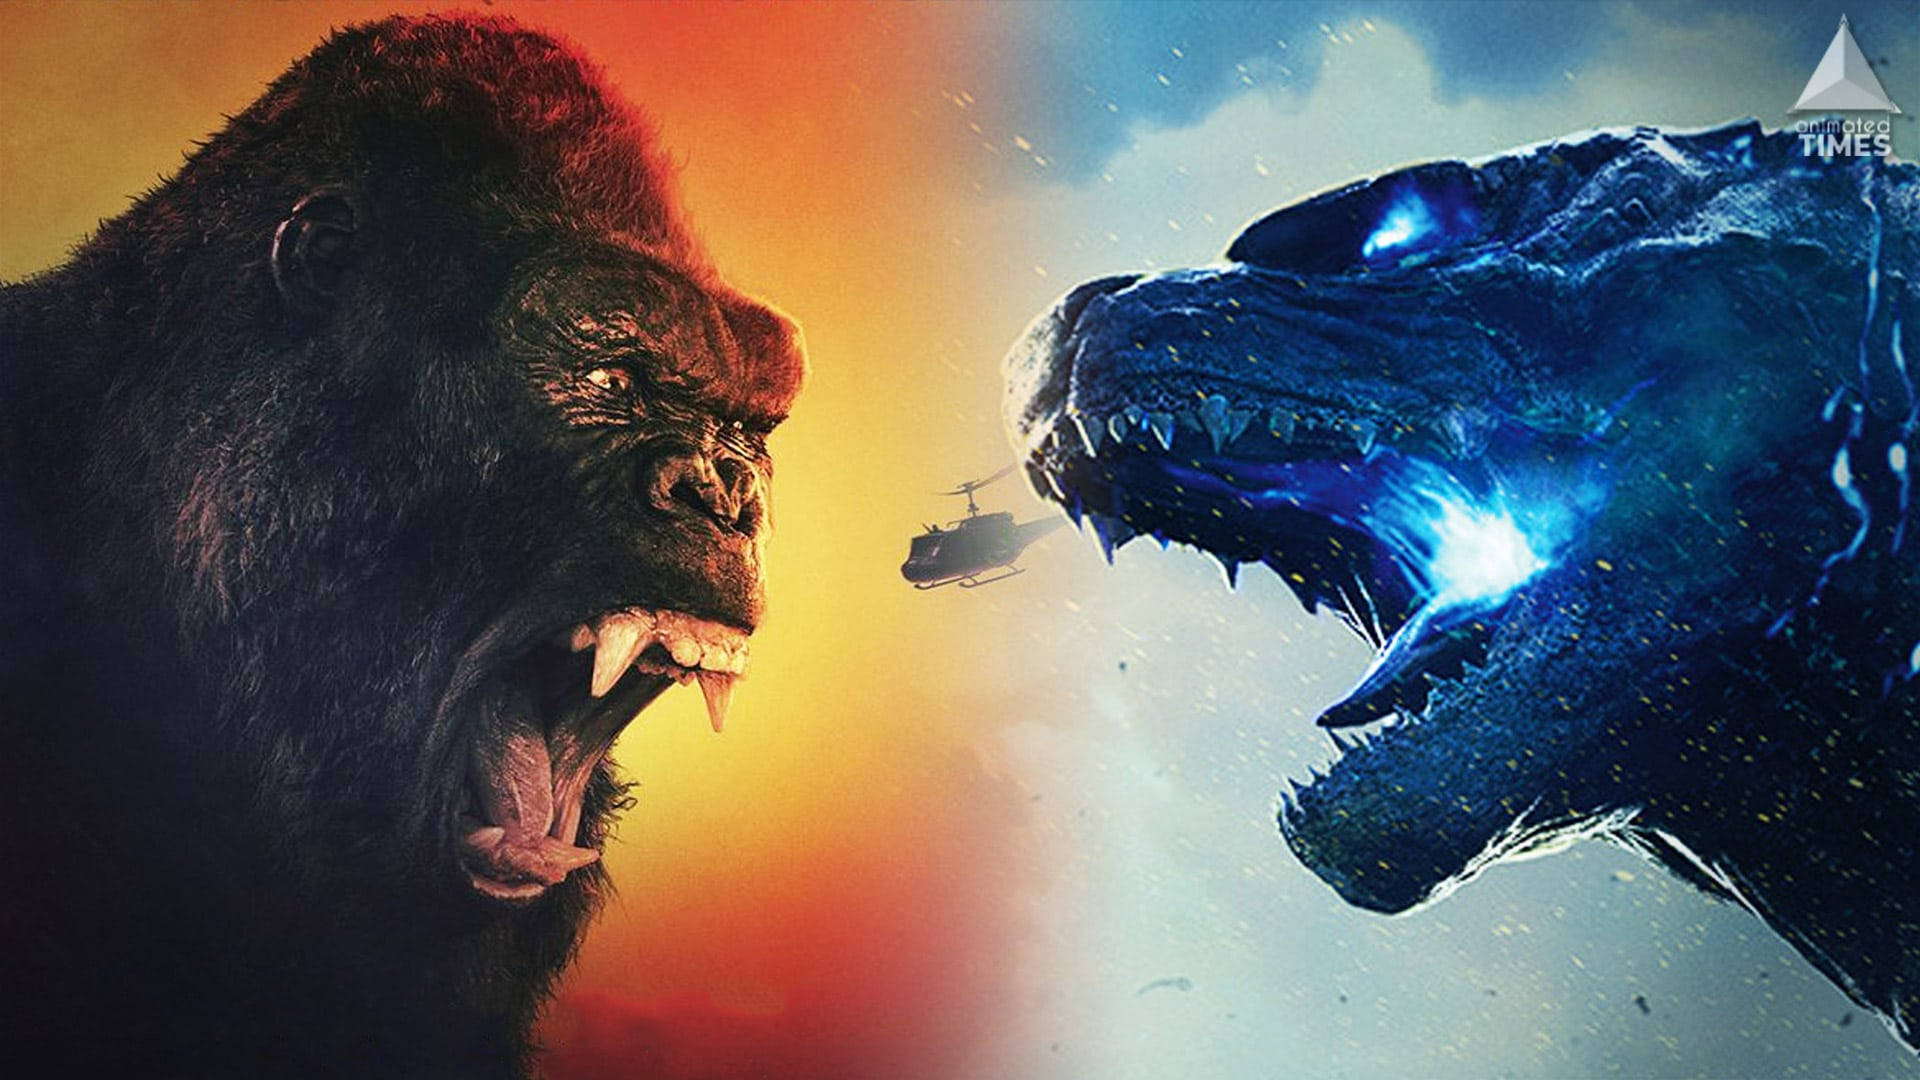 Free Godzilla Vs Kong Wallpaper Downloads, [100+] Godzilla Vs Kong  Wallpapers for FREE 